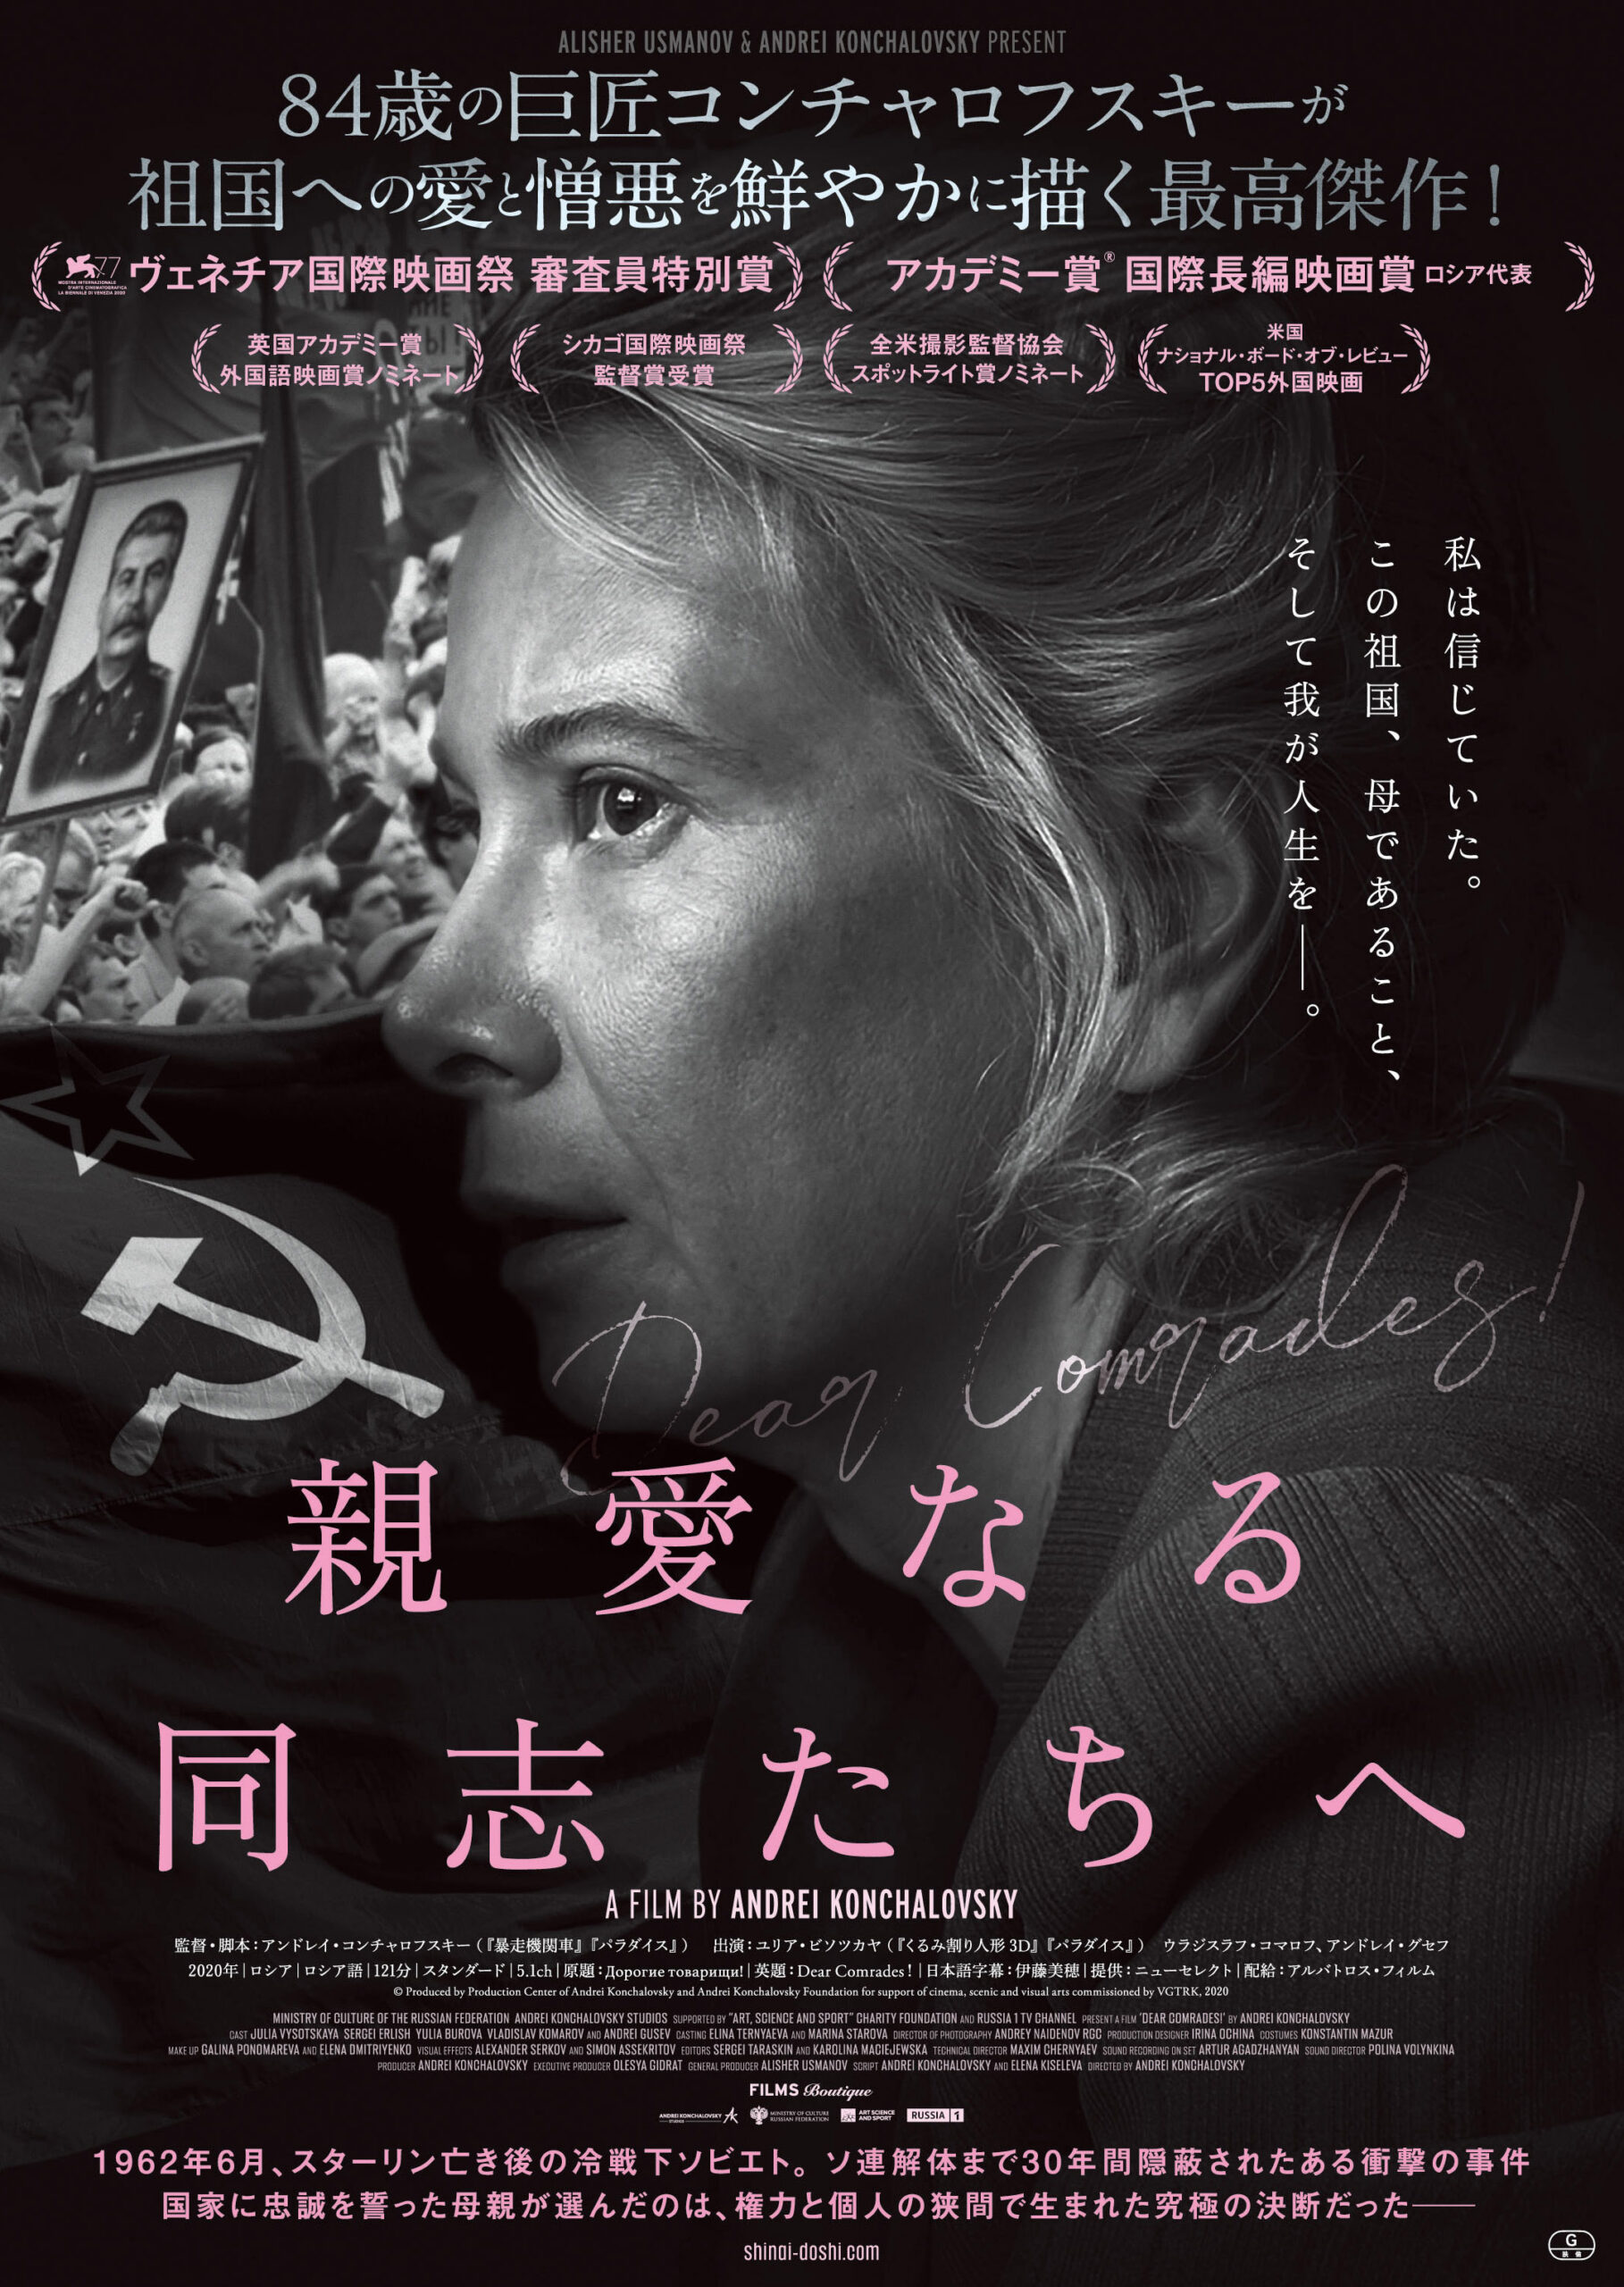 名古屋の映画館「伏見ミリオン座」が本日4月19日で移転オープン3周年　3周年を記念した特別企画が実施中